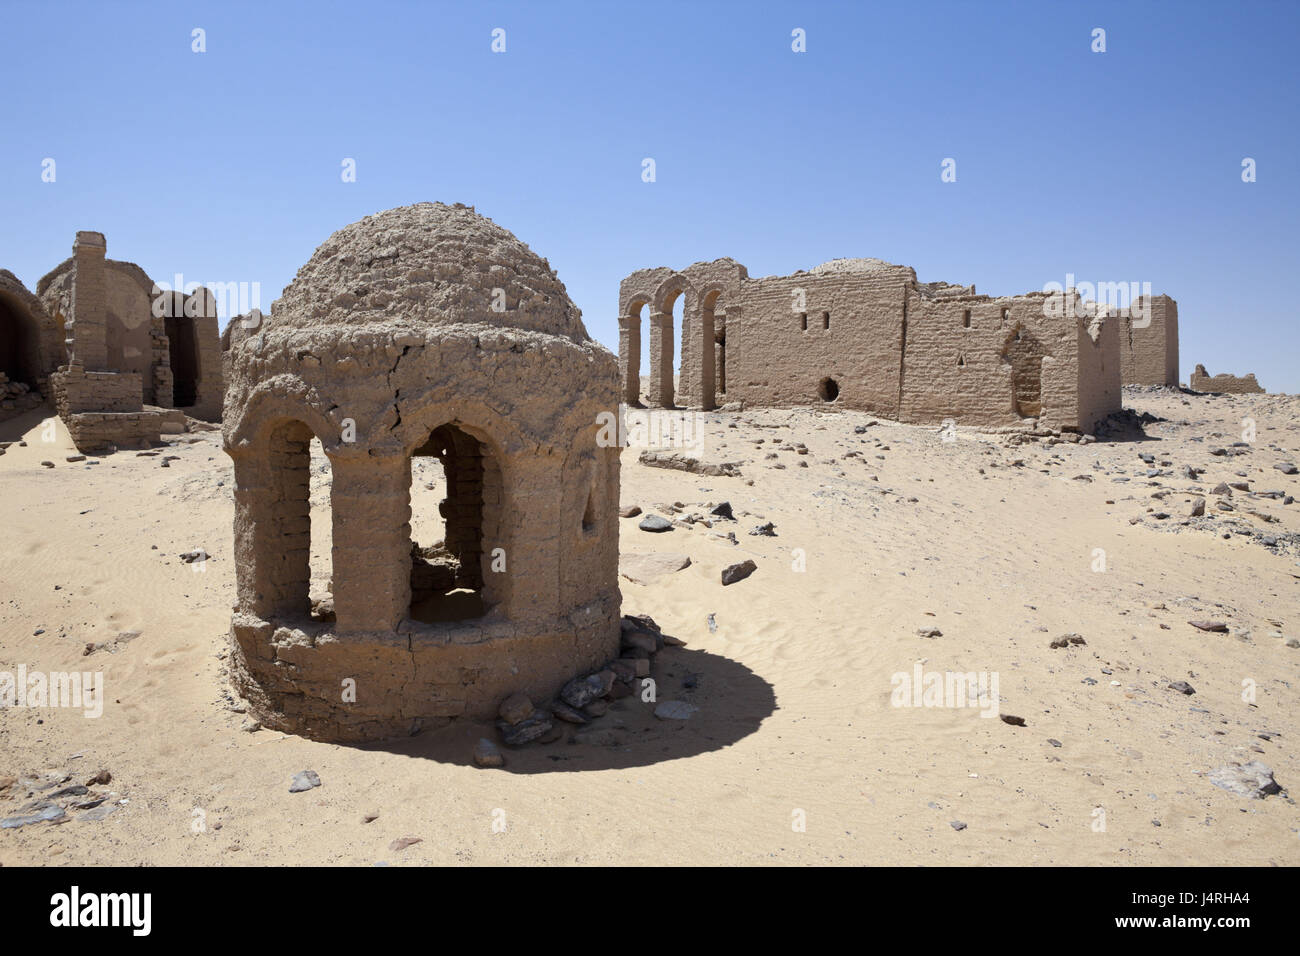 Necropoli di al-Bagawat, tomba di bande di oasi Kargha, deserto libico, Egitto, Foto Stock